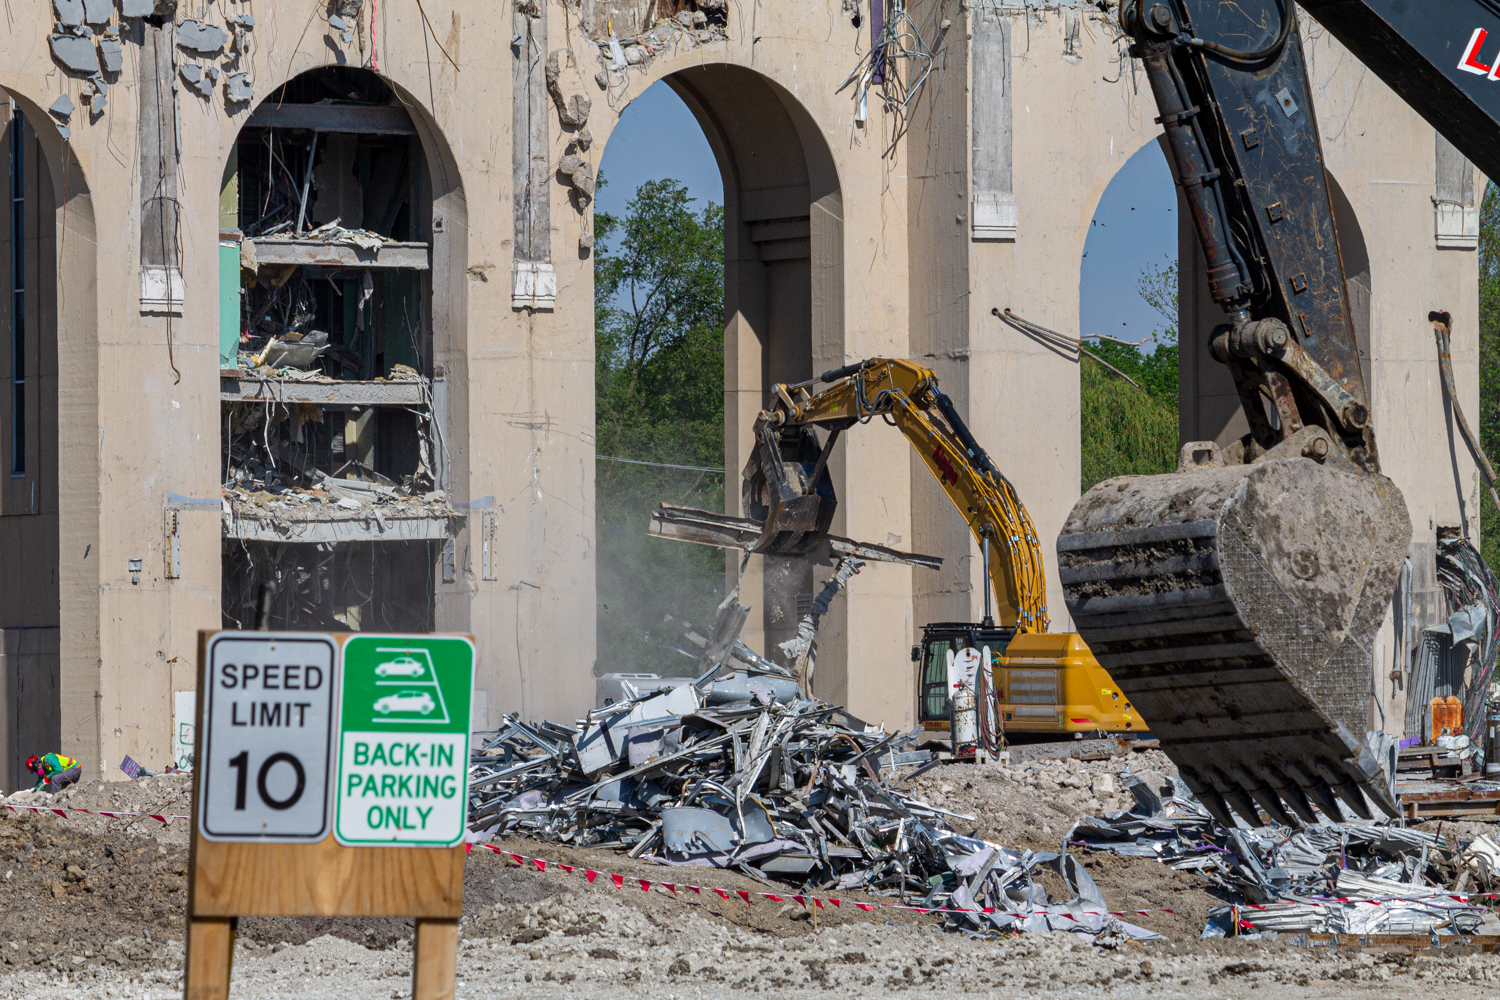 Ryan Field demolition Northwestern University 